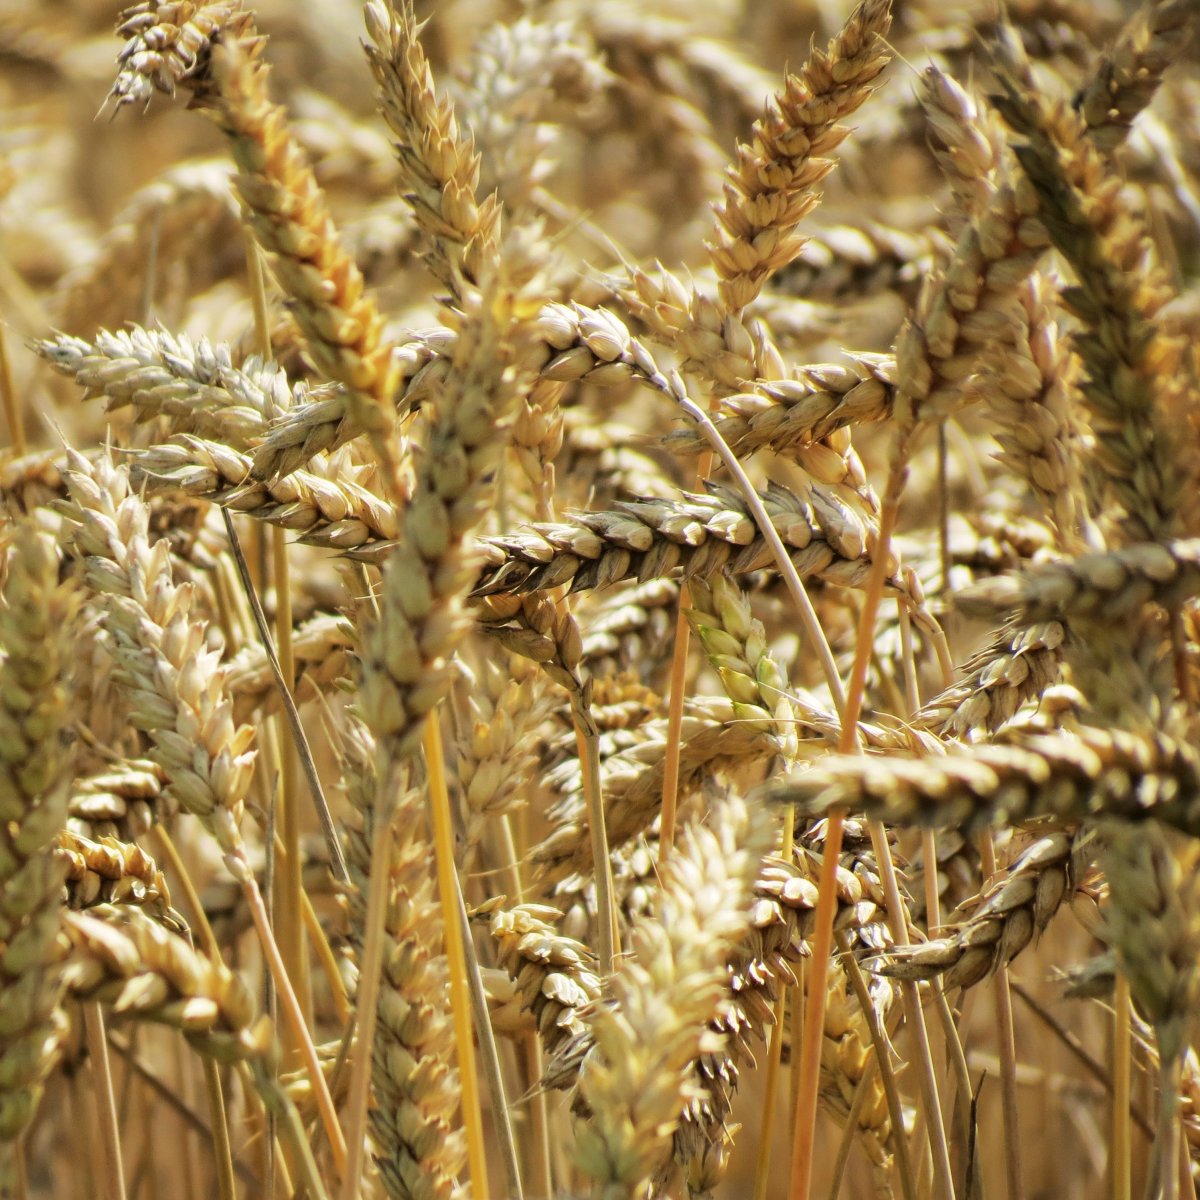 grains in a field.